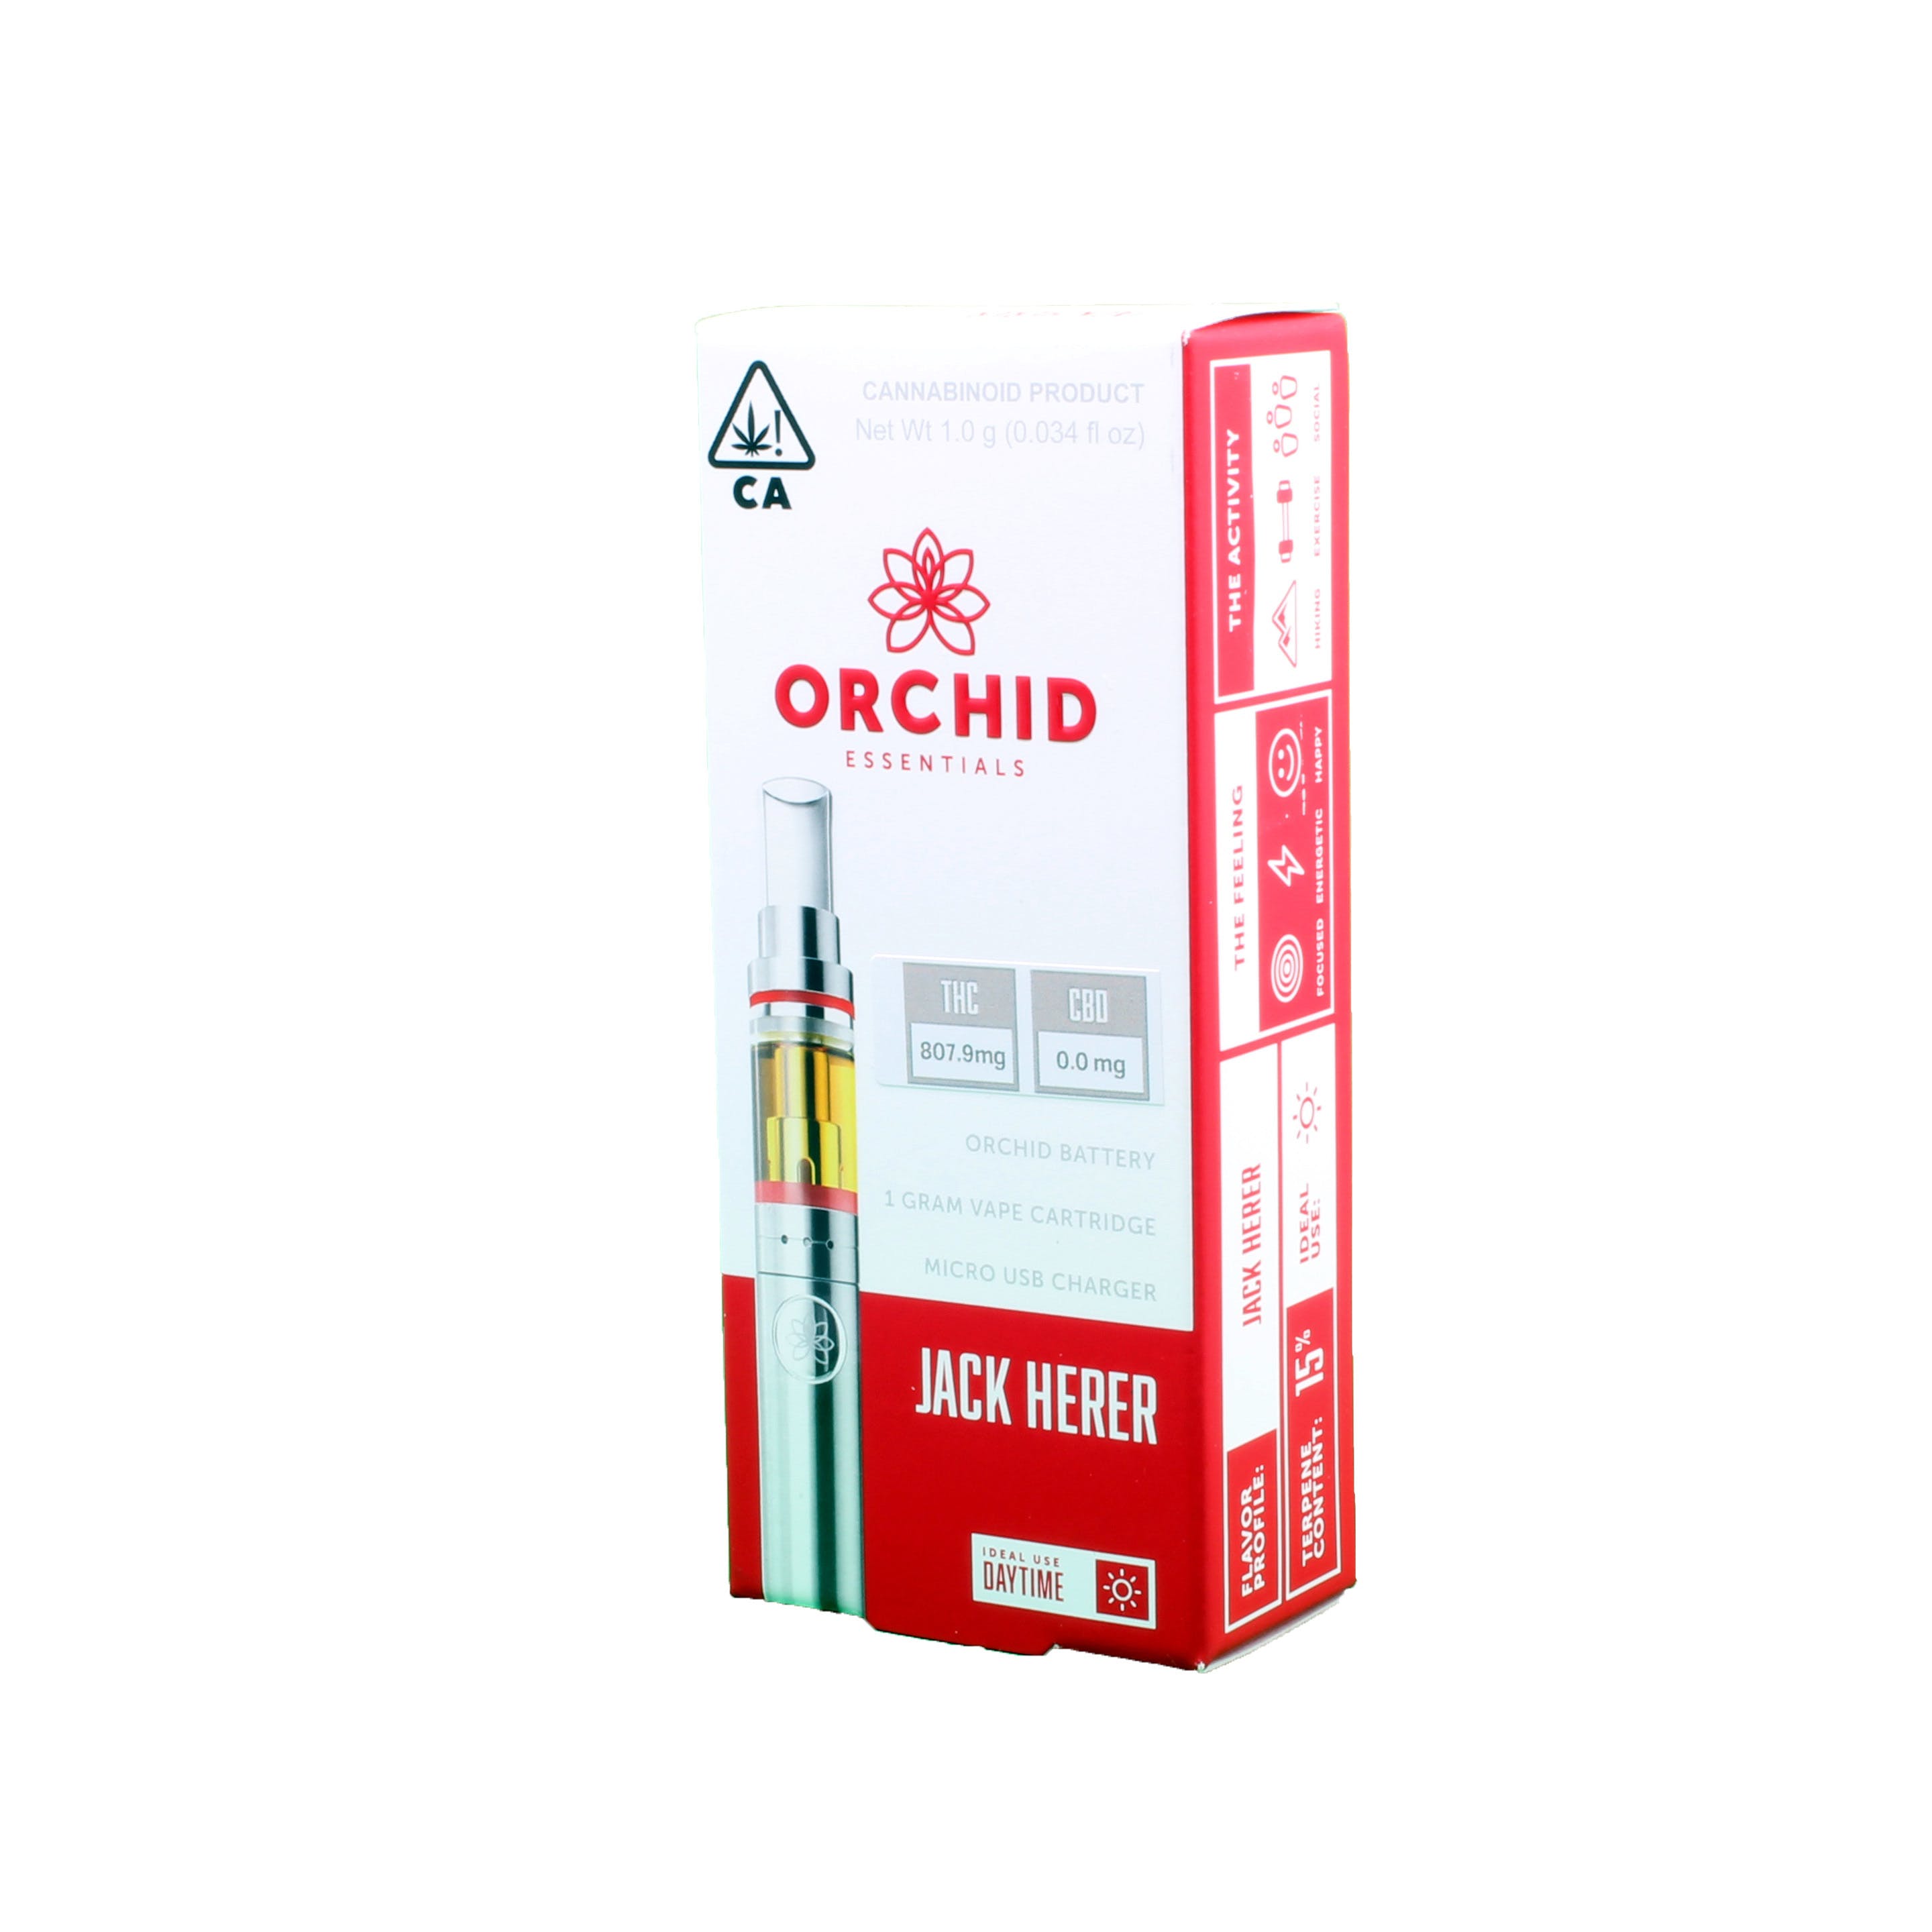 Orchid Essentials - Jack Herer Kit